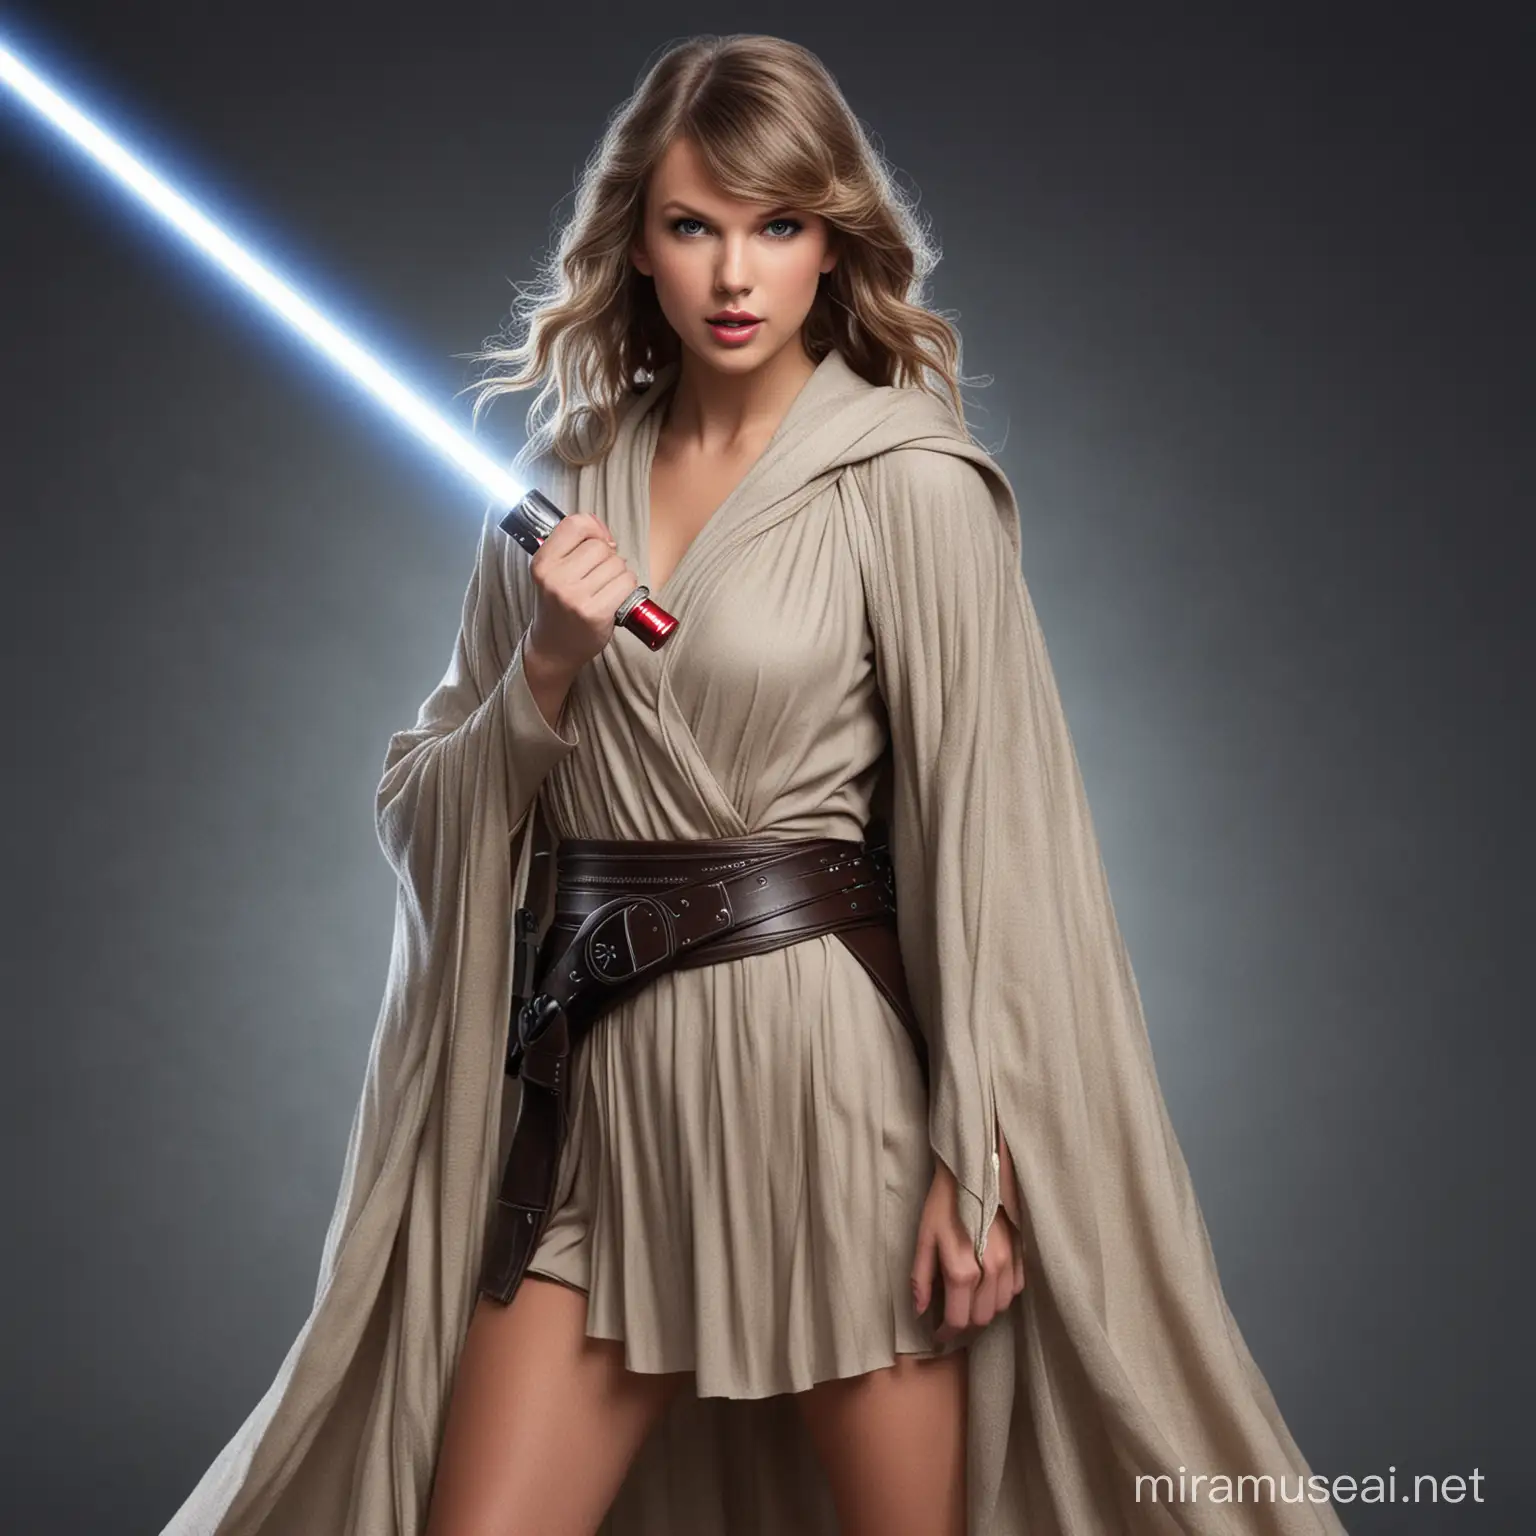 Taylor Swift as Jedi Knight in Star Wars Inspired Scene